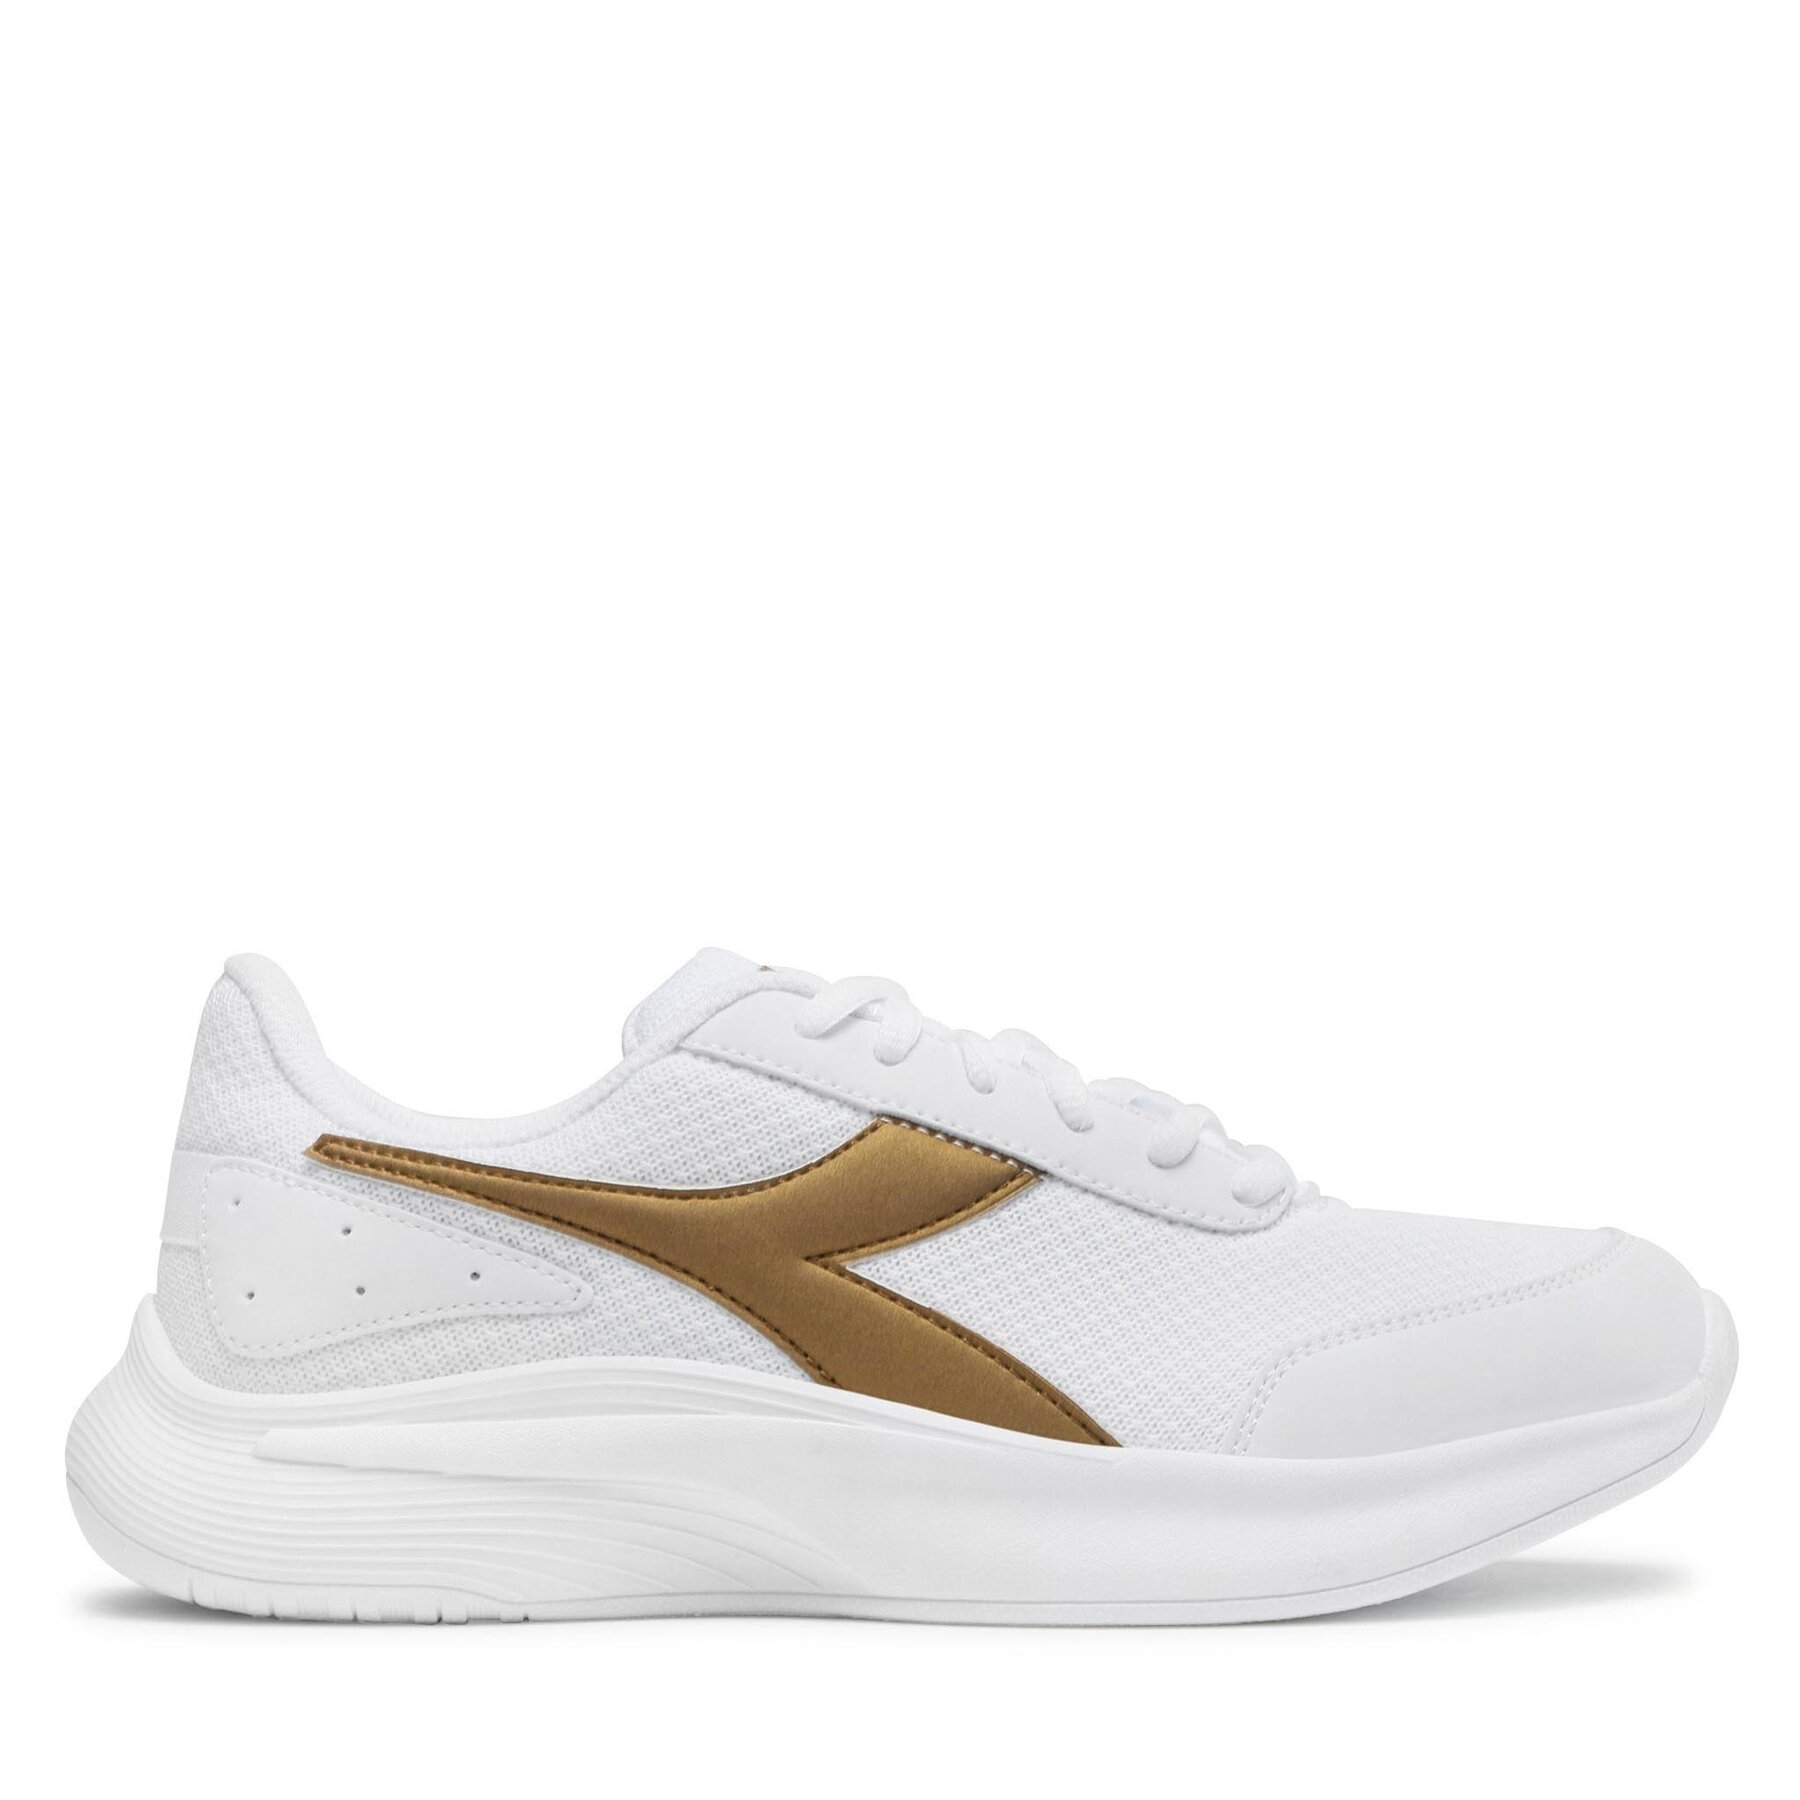 Schuhe Diadora Eagle 6 101.179071-C1070 White/Gold von Diadora